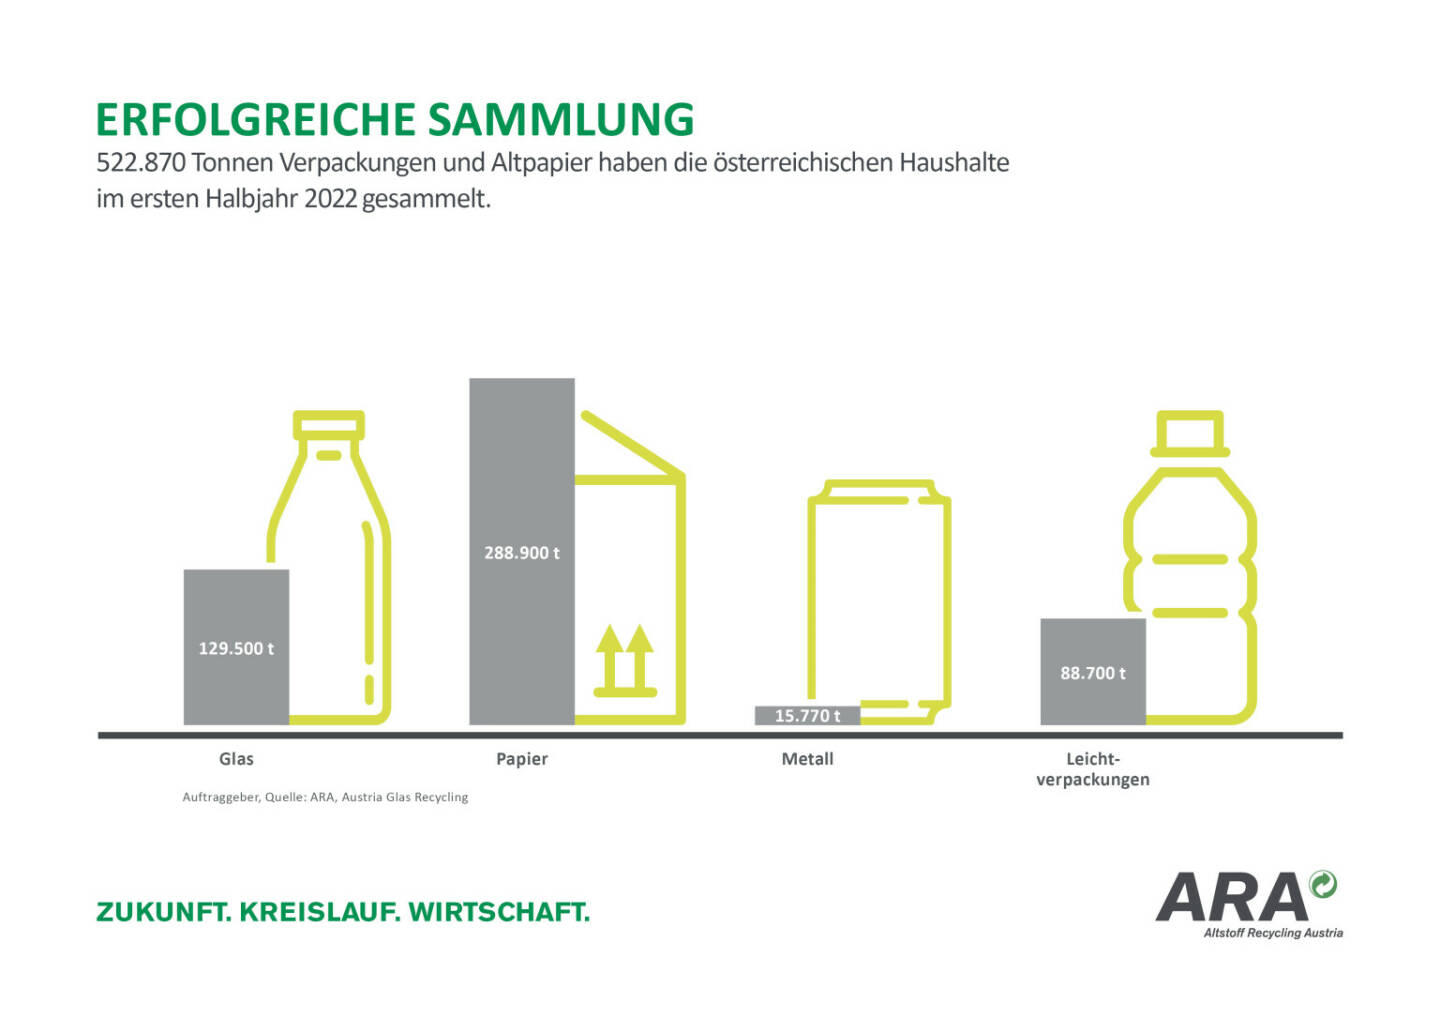 ARA Altstoff Recycling Austria AG: Österreichs Haushalte sammelten im Halbjahr 522.870 Tonnen Verpackungen und Altpapier, Credit: ARA